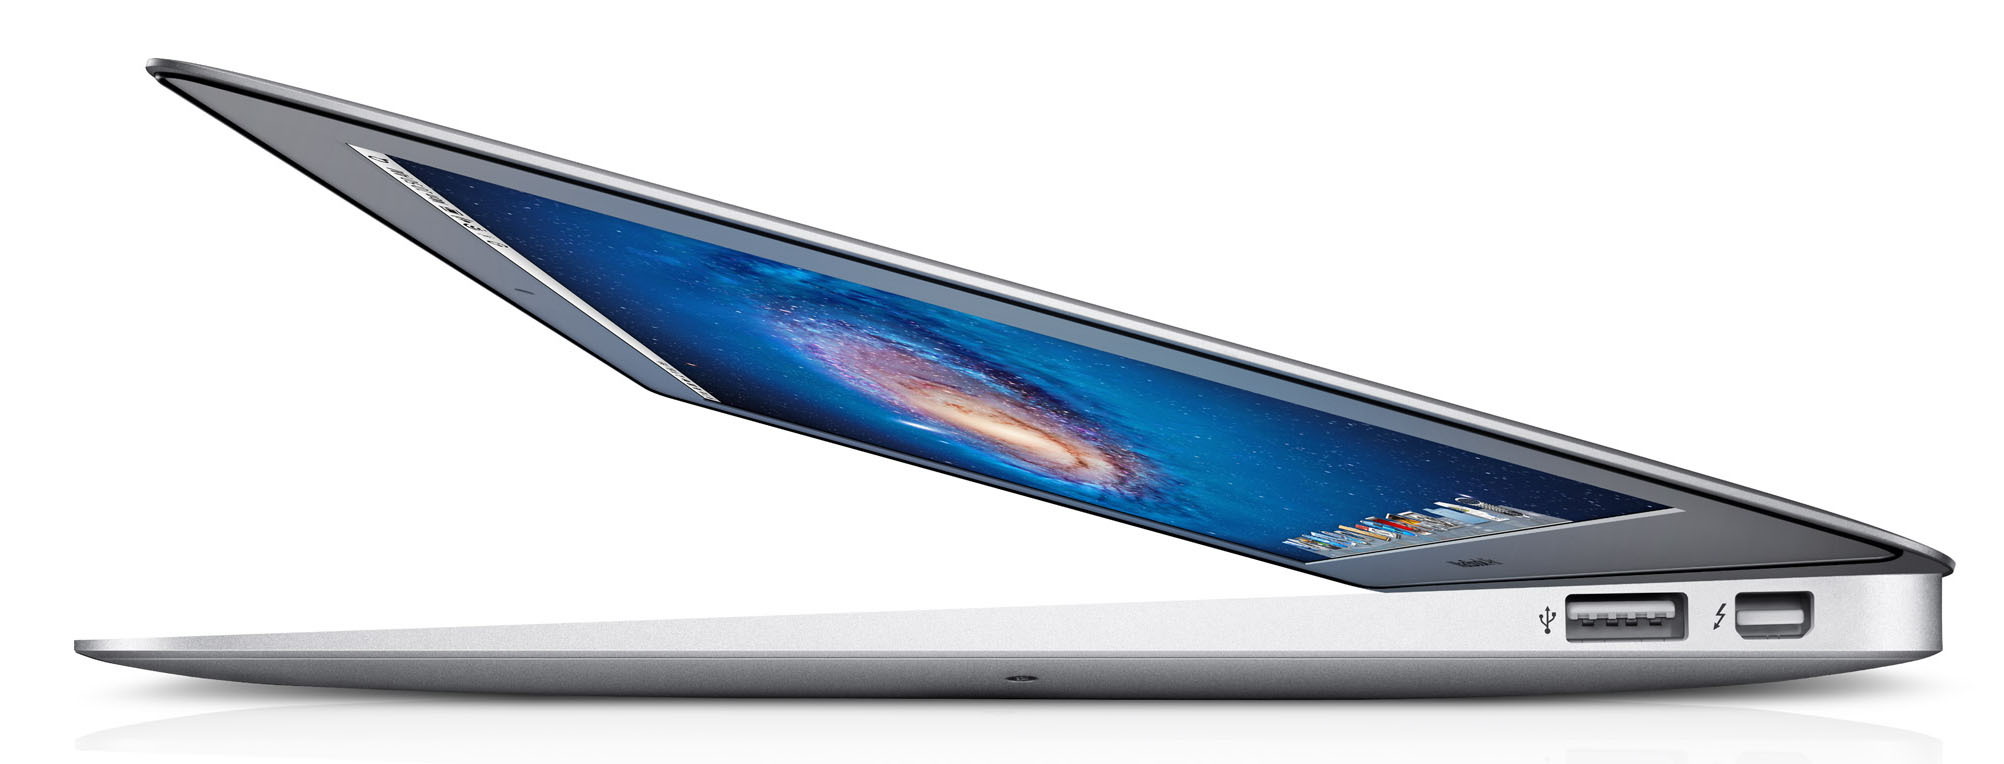 Apple MacBook Air 11 (Mid-2012) - スペック、テスト、価格 